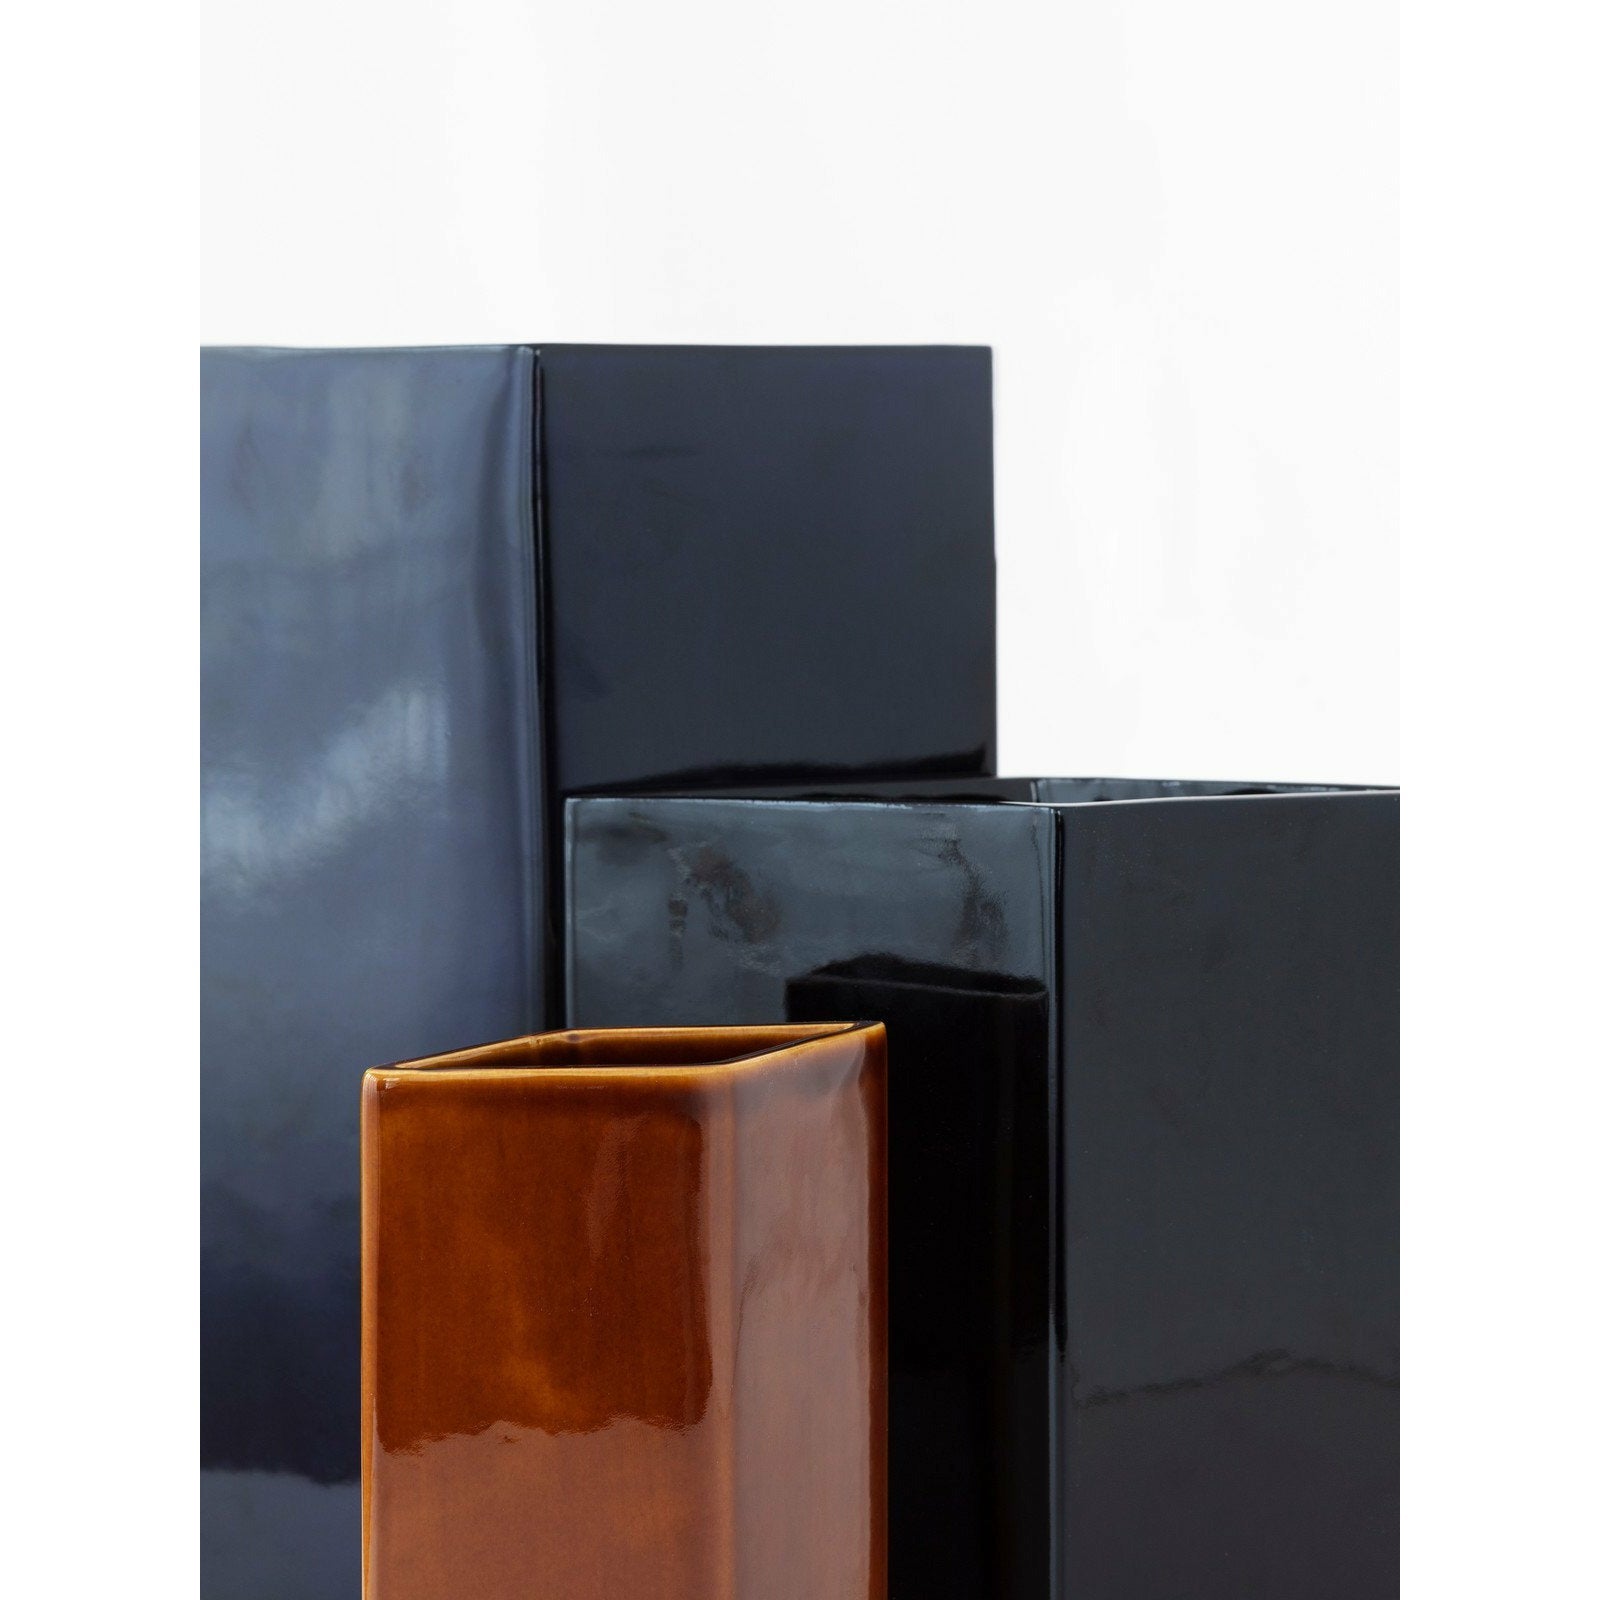 Iittala ruutu wazon ceramiczny czarny, 22,5 cm